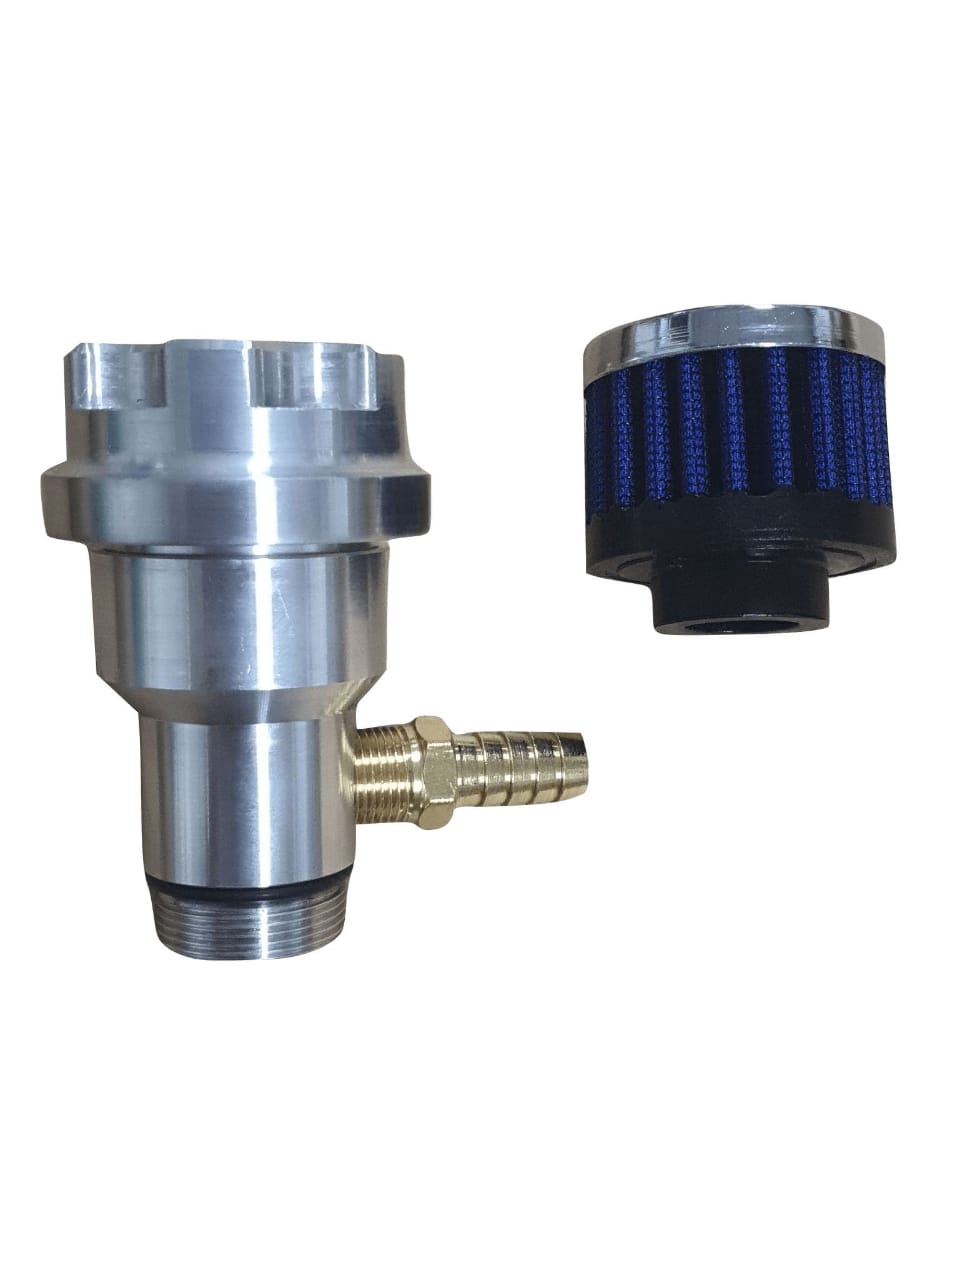 Prolongador de óleo aluminio c/ niple + filtro respiro azul Fusca e similares  - SSR Peças & Acessórios ltda ME.